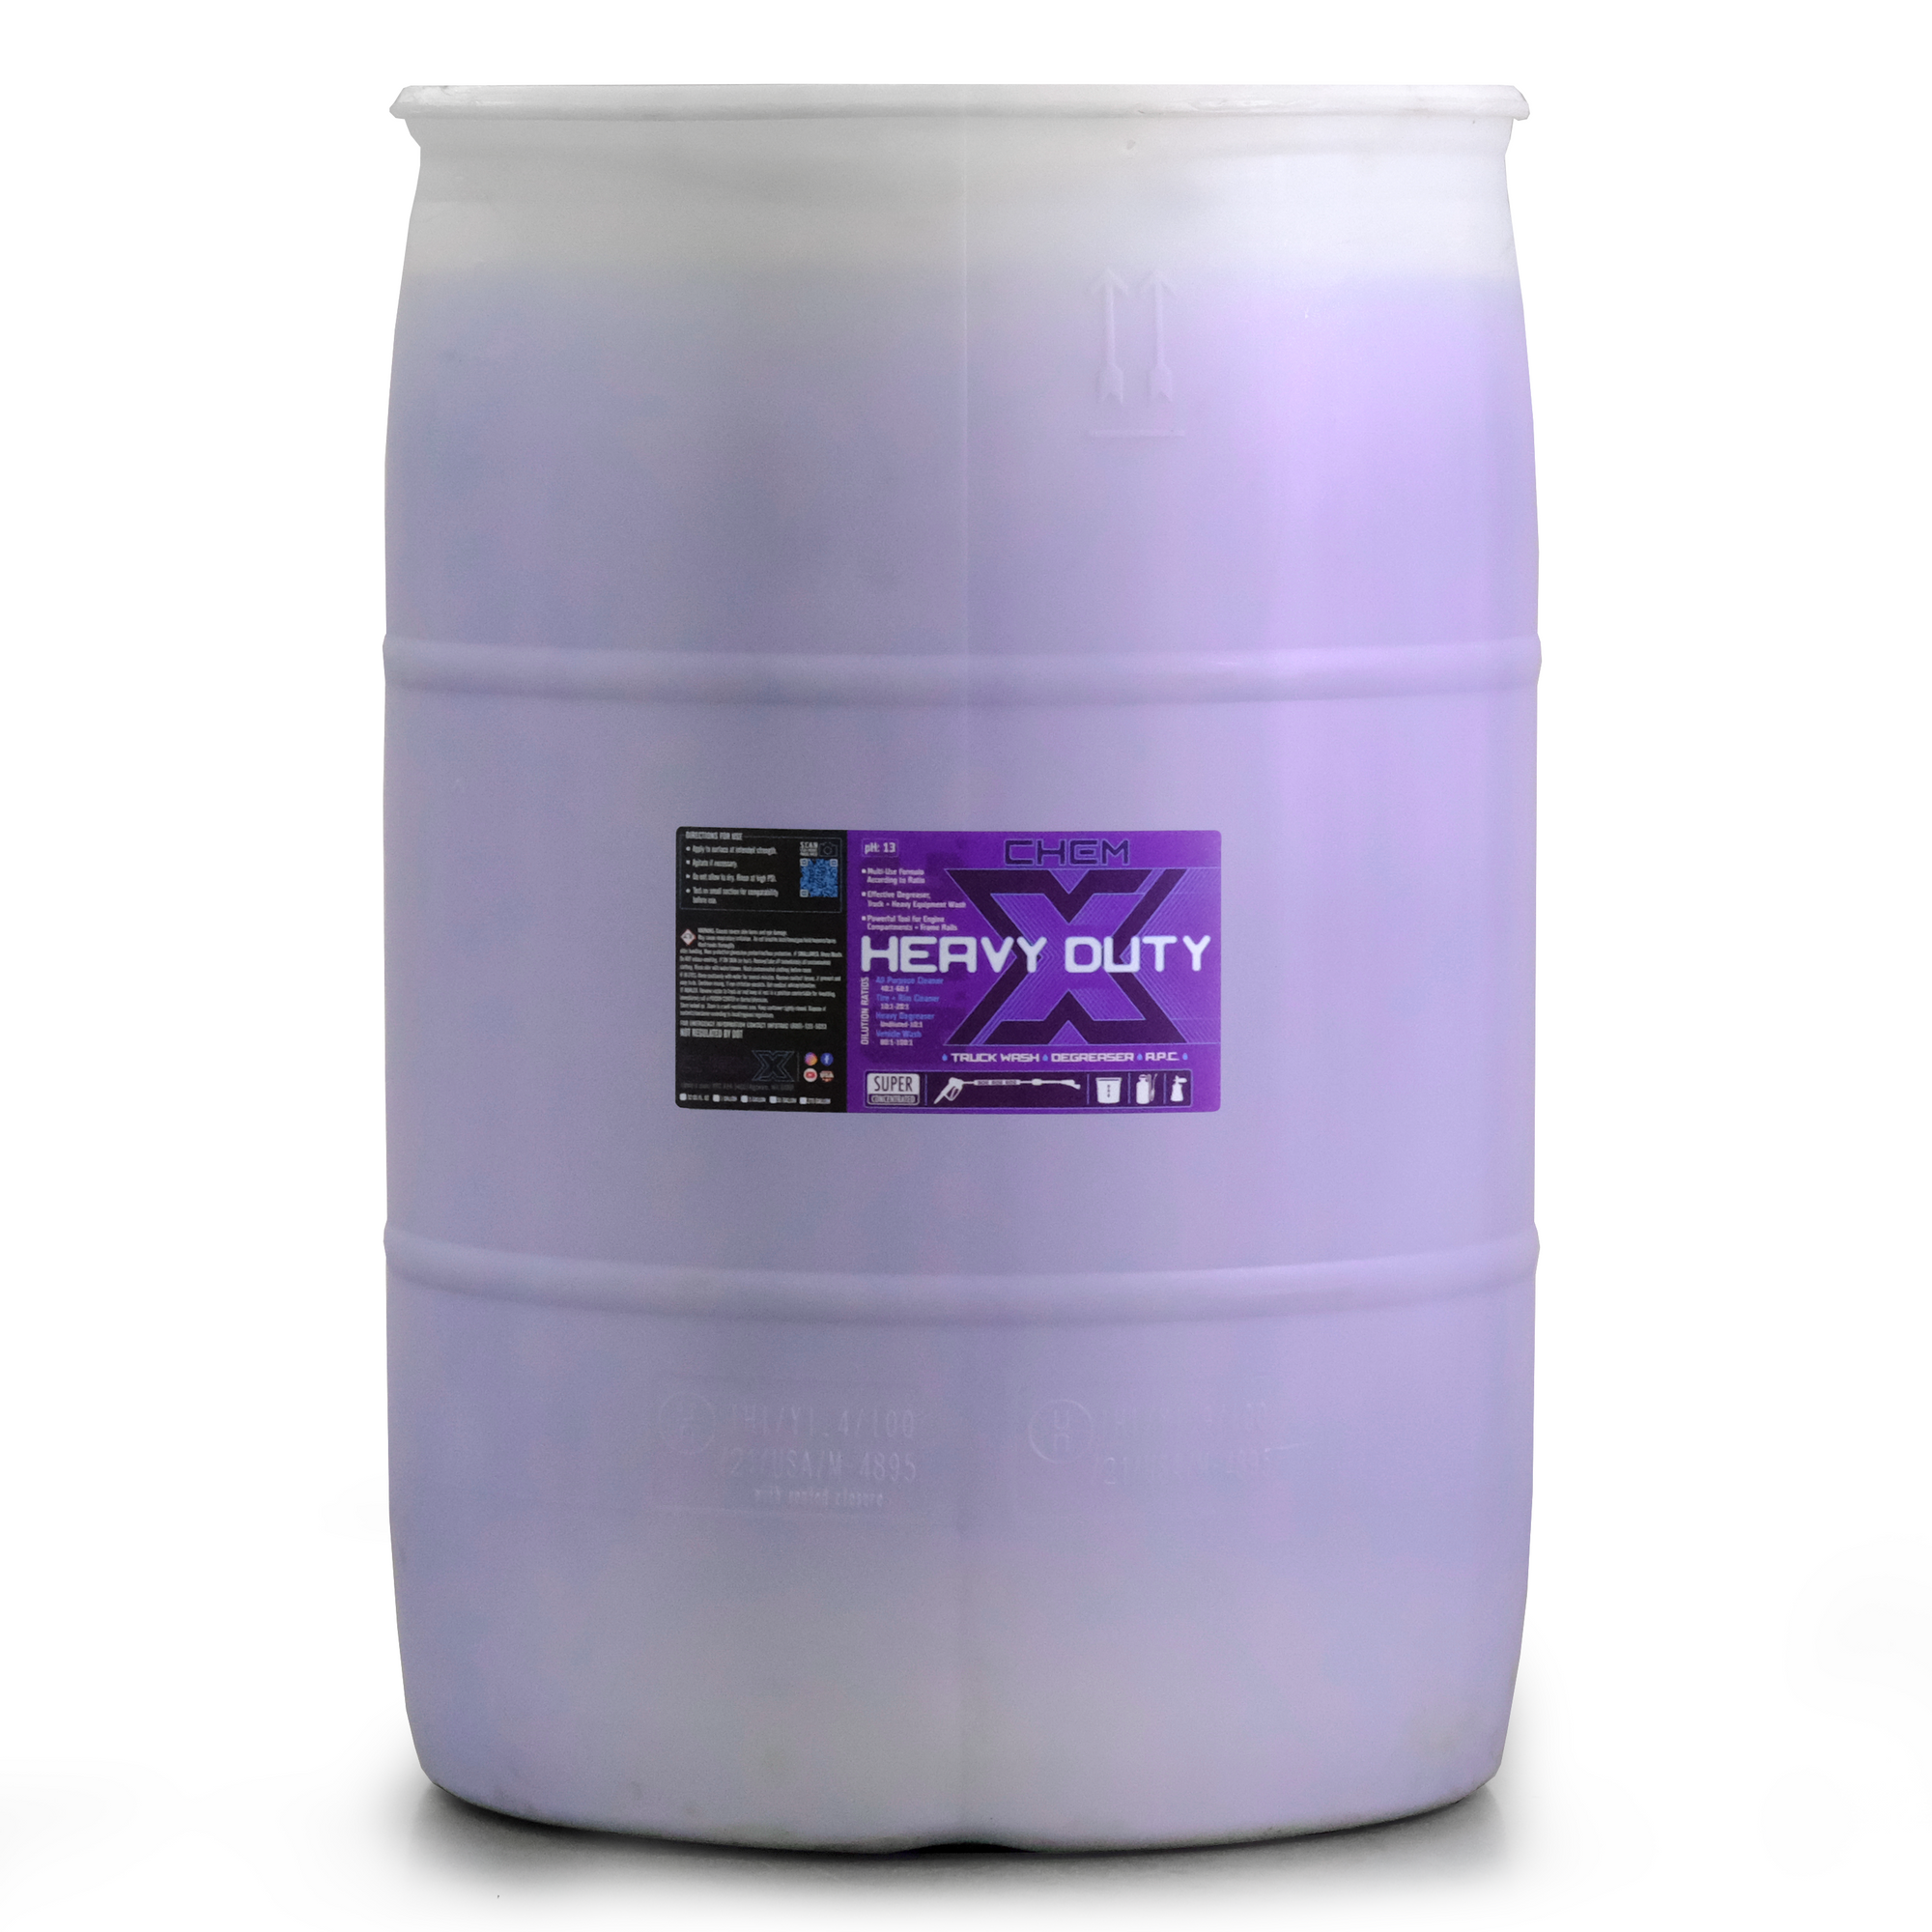 Chemeez Heavy Duty Degreaser, 1 Gallon